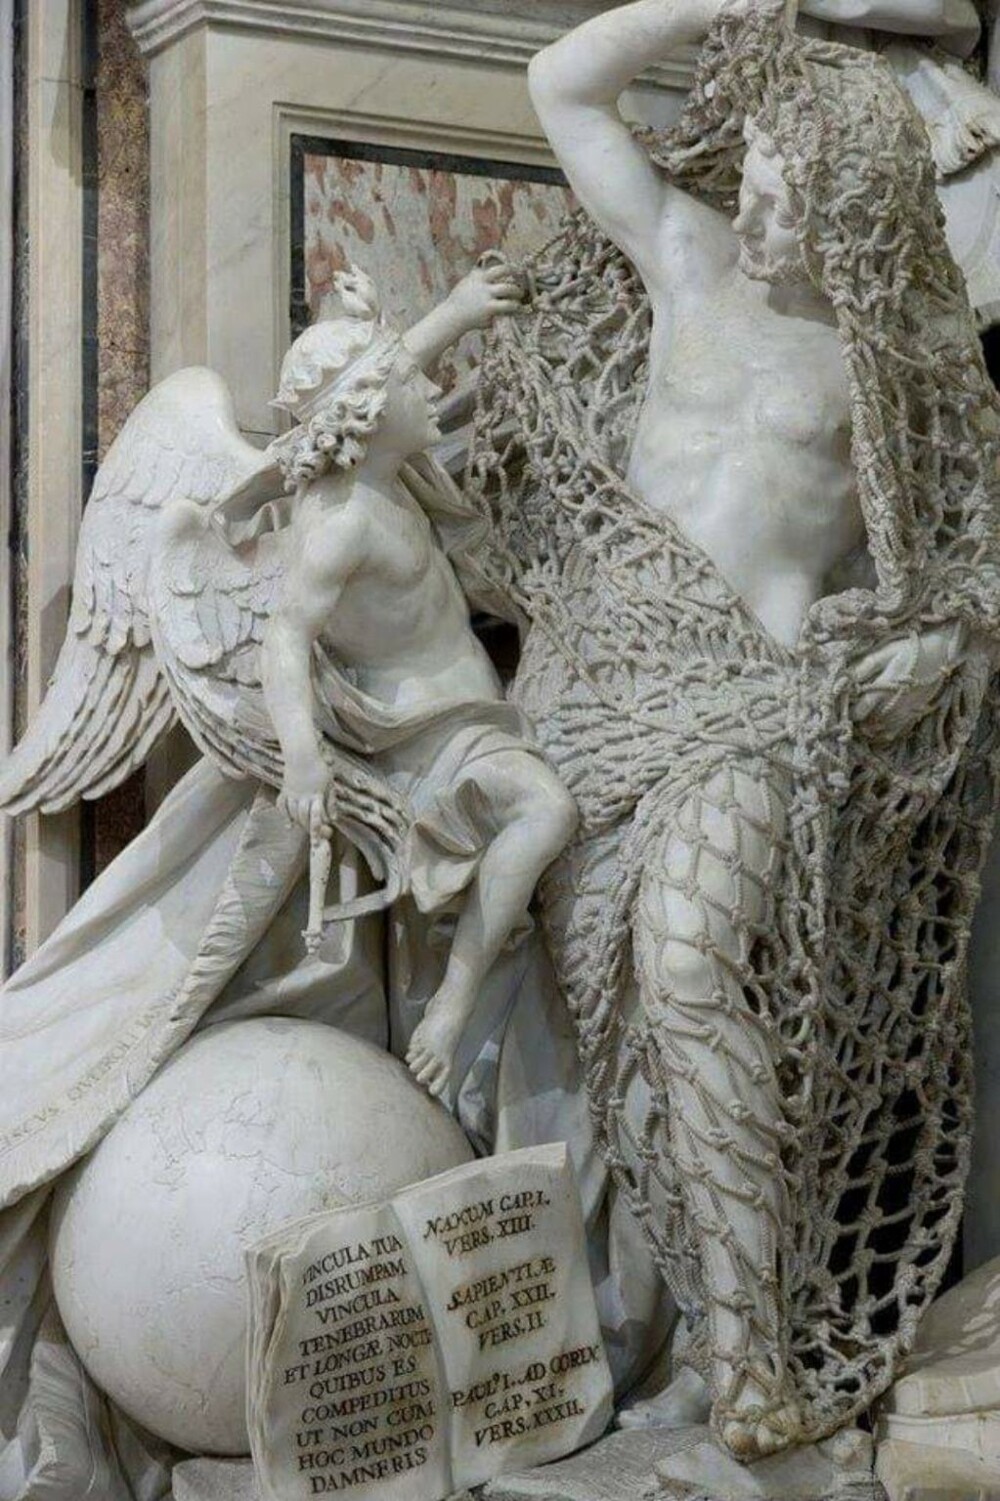 1. Скульптура XVIII века под названием под названием Disinganno ("Избавление от чар"). Работа Франческо Кейроло стала всемирно известной благодаря одной детали - рыбацкой сети, вырезанной вручную из цельного блока мрамора. Мастер работал над скульпту